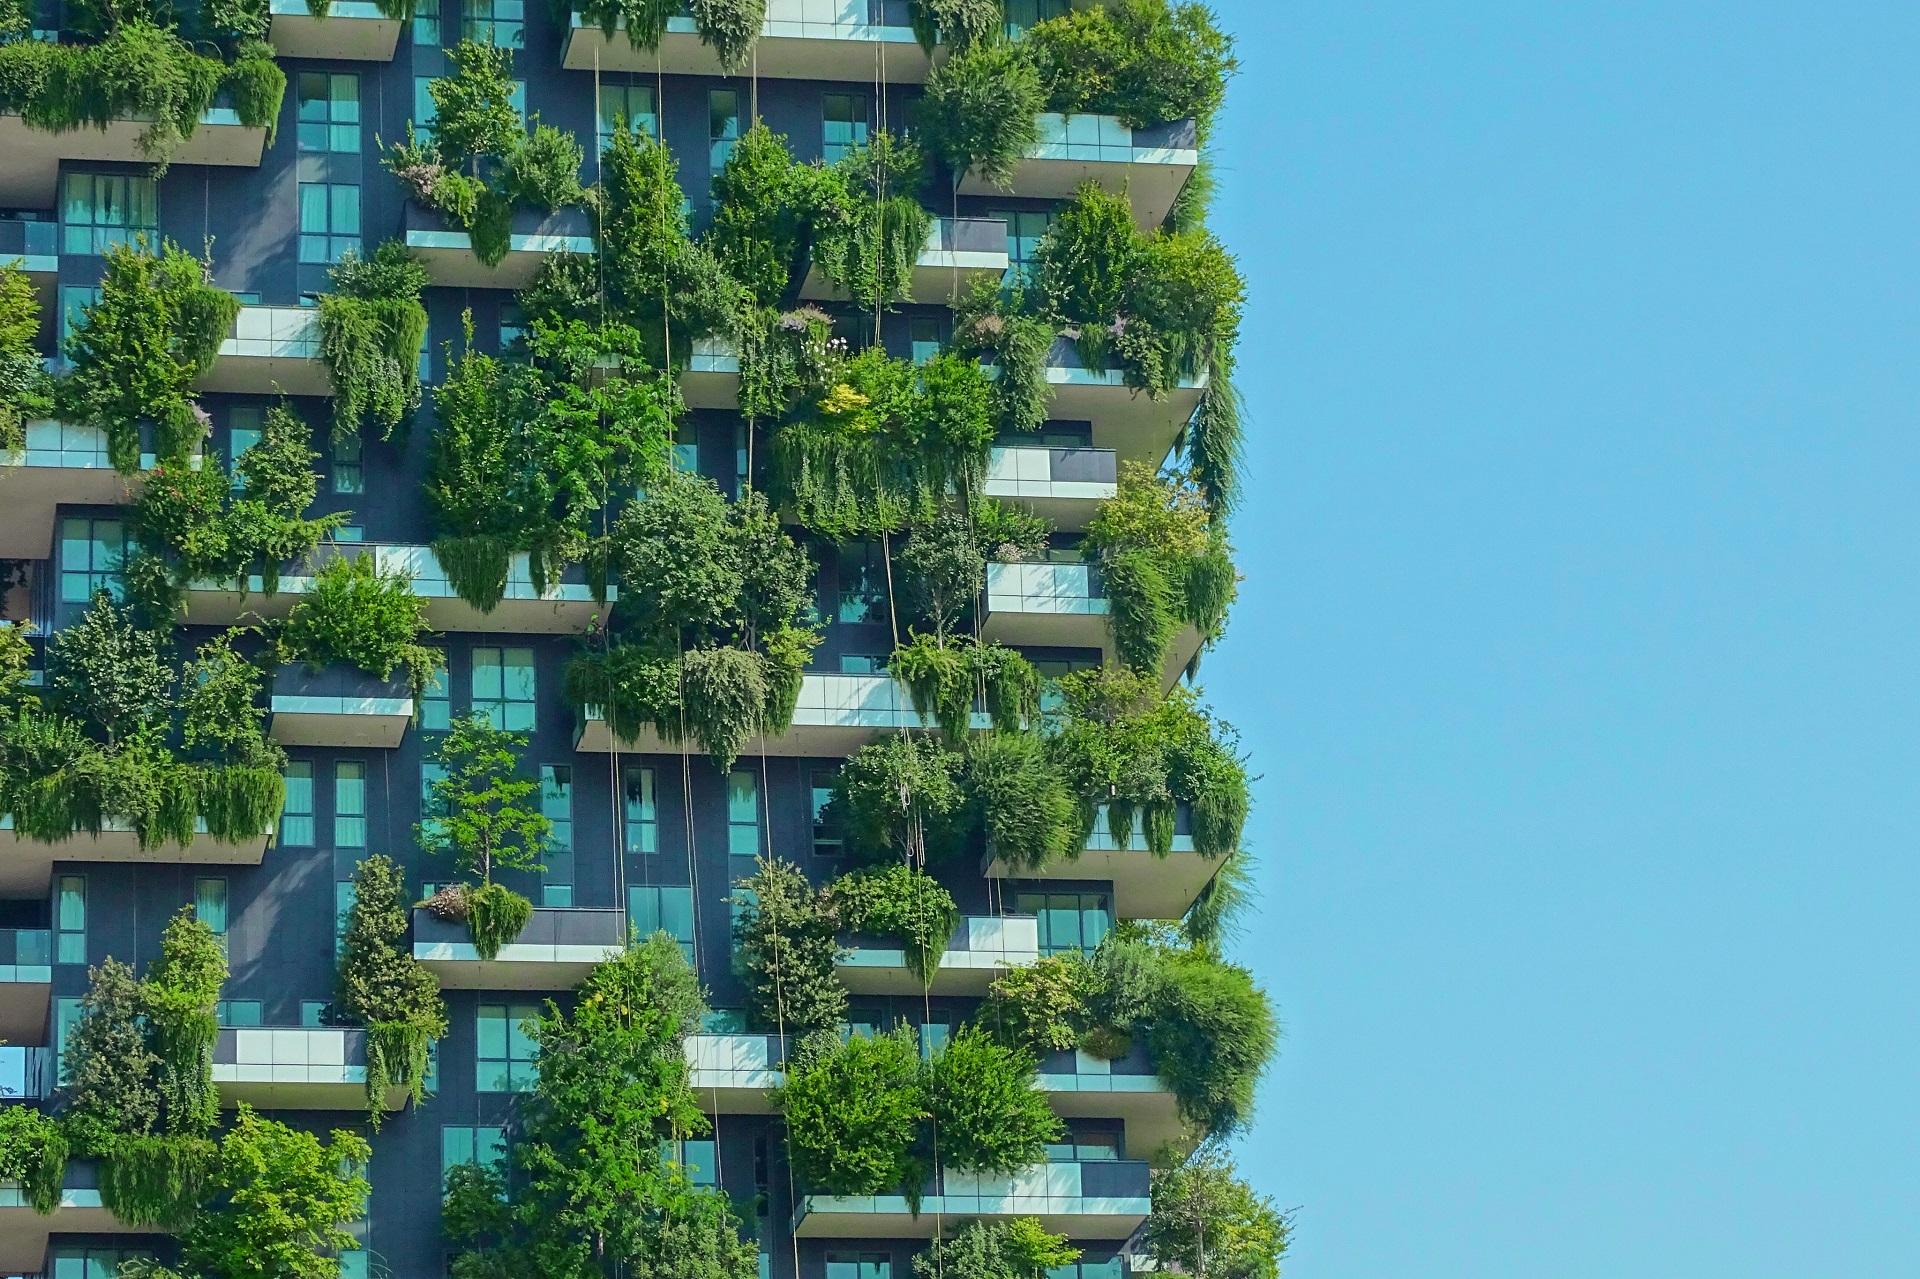 Il Bosco Verticale progettato dallo studio dell’architetto Stefano Boeri, considerato il simbolo della rinascita “green” di Milano